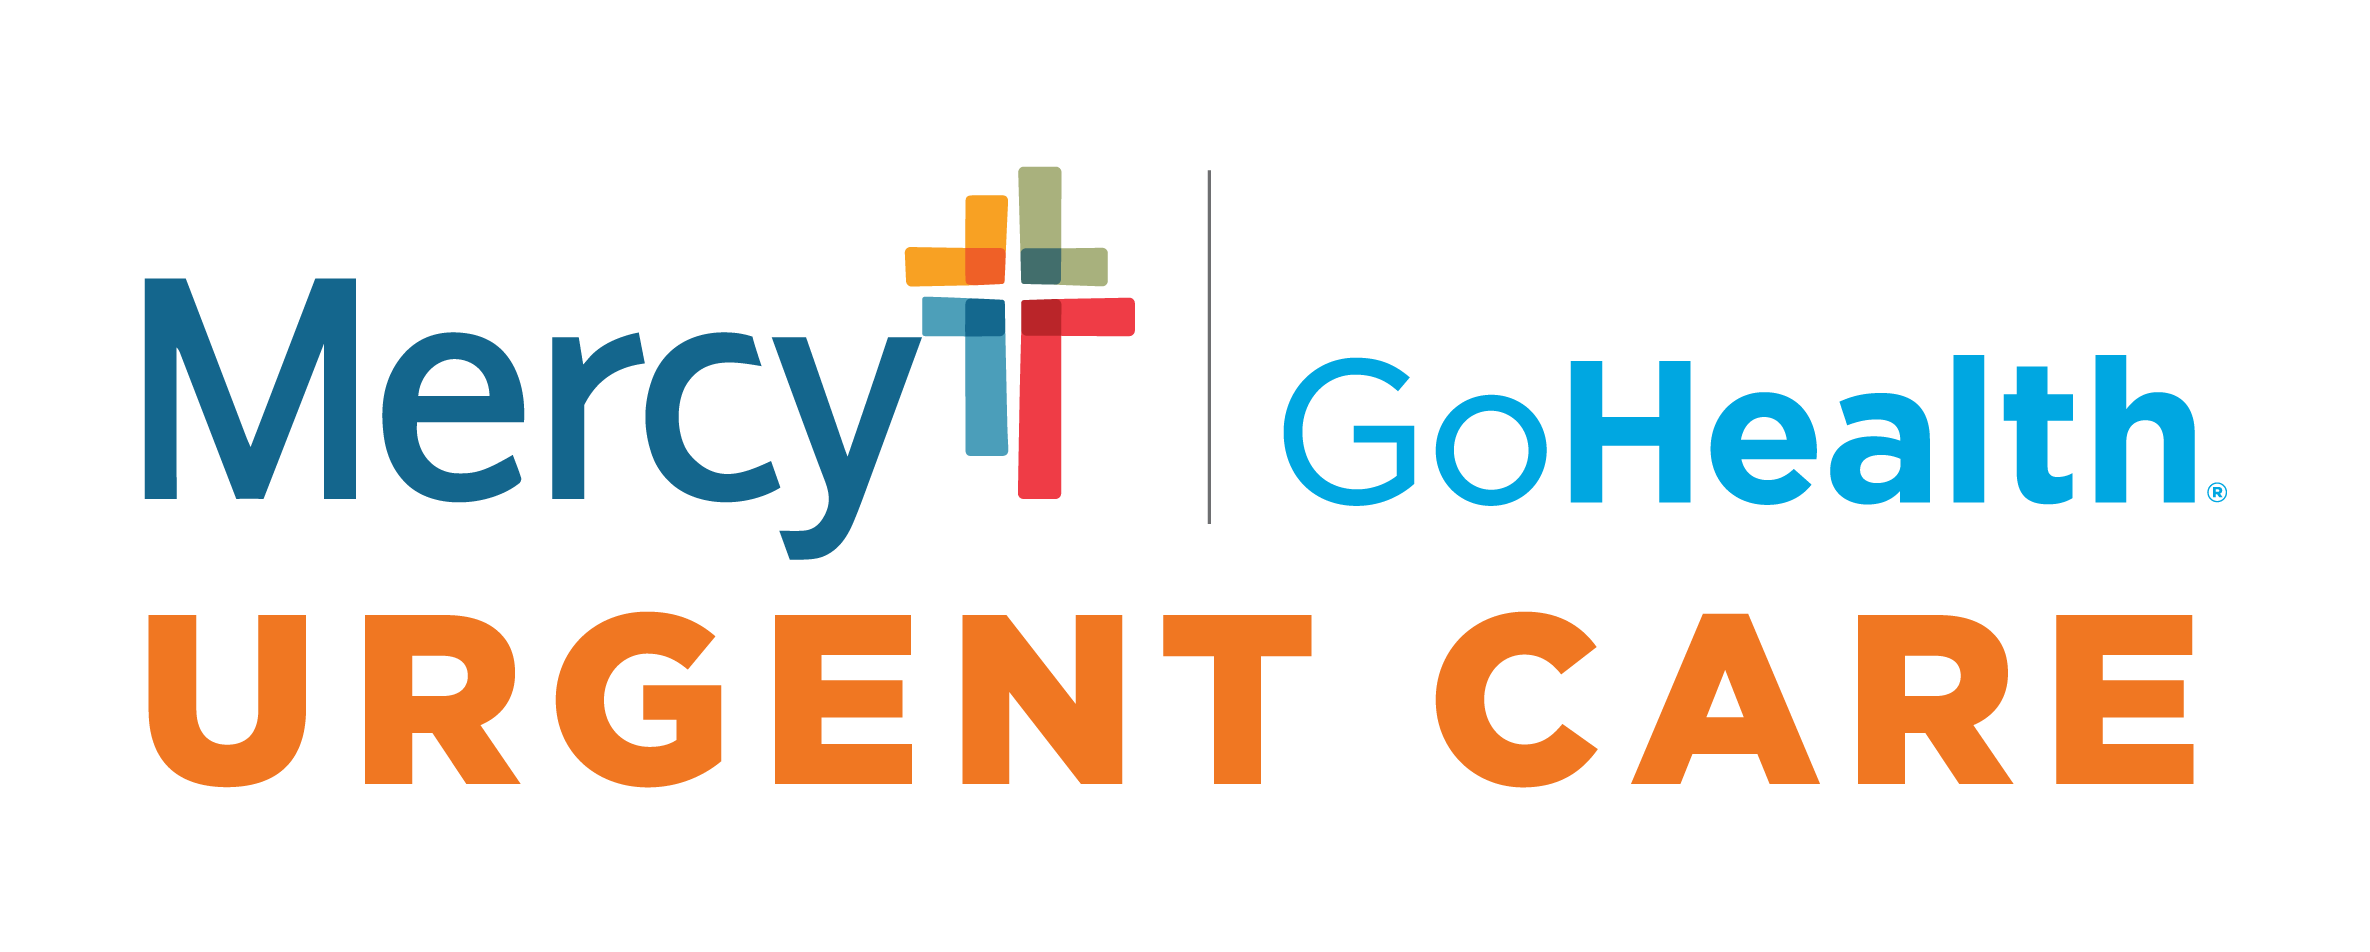 Mercy- GoHealth Urgent Care - Nw Oklahoma City Logo